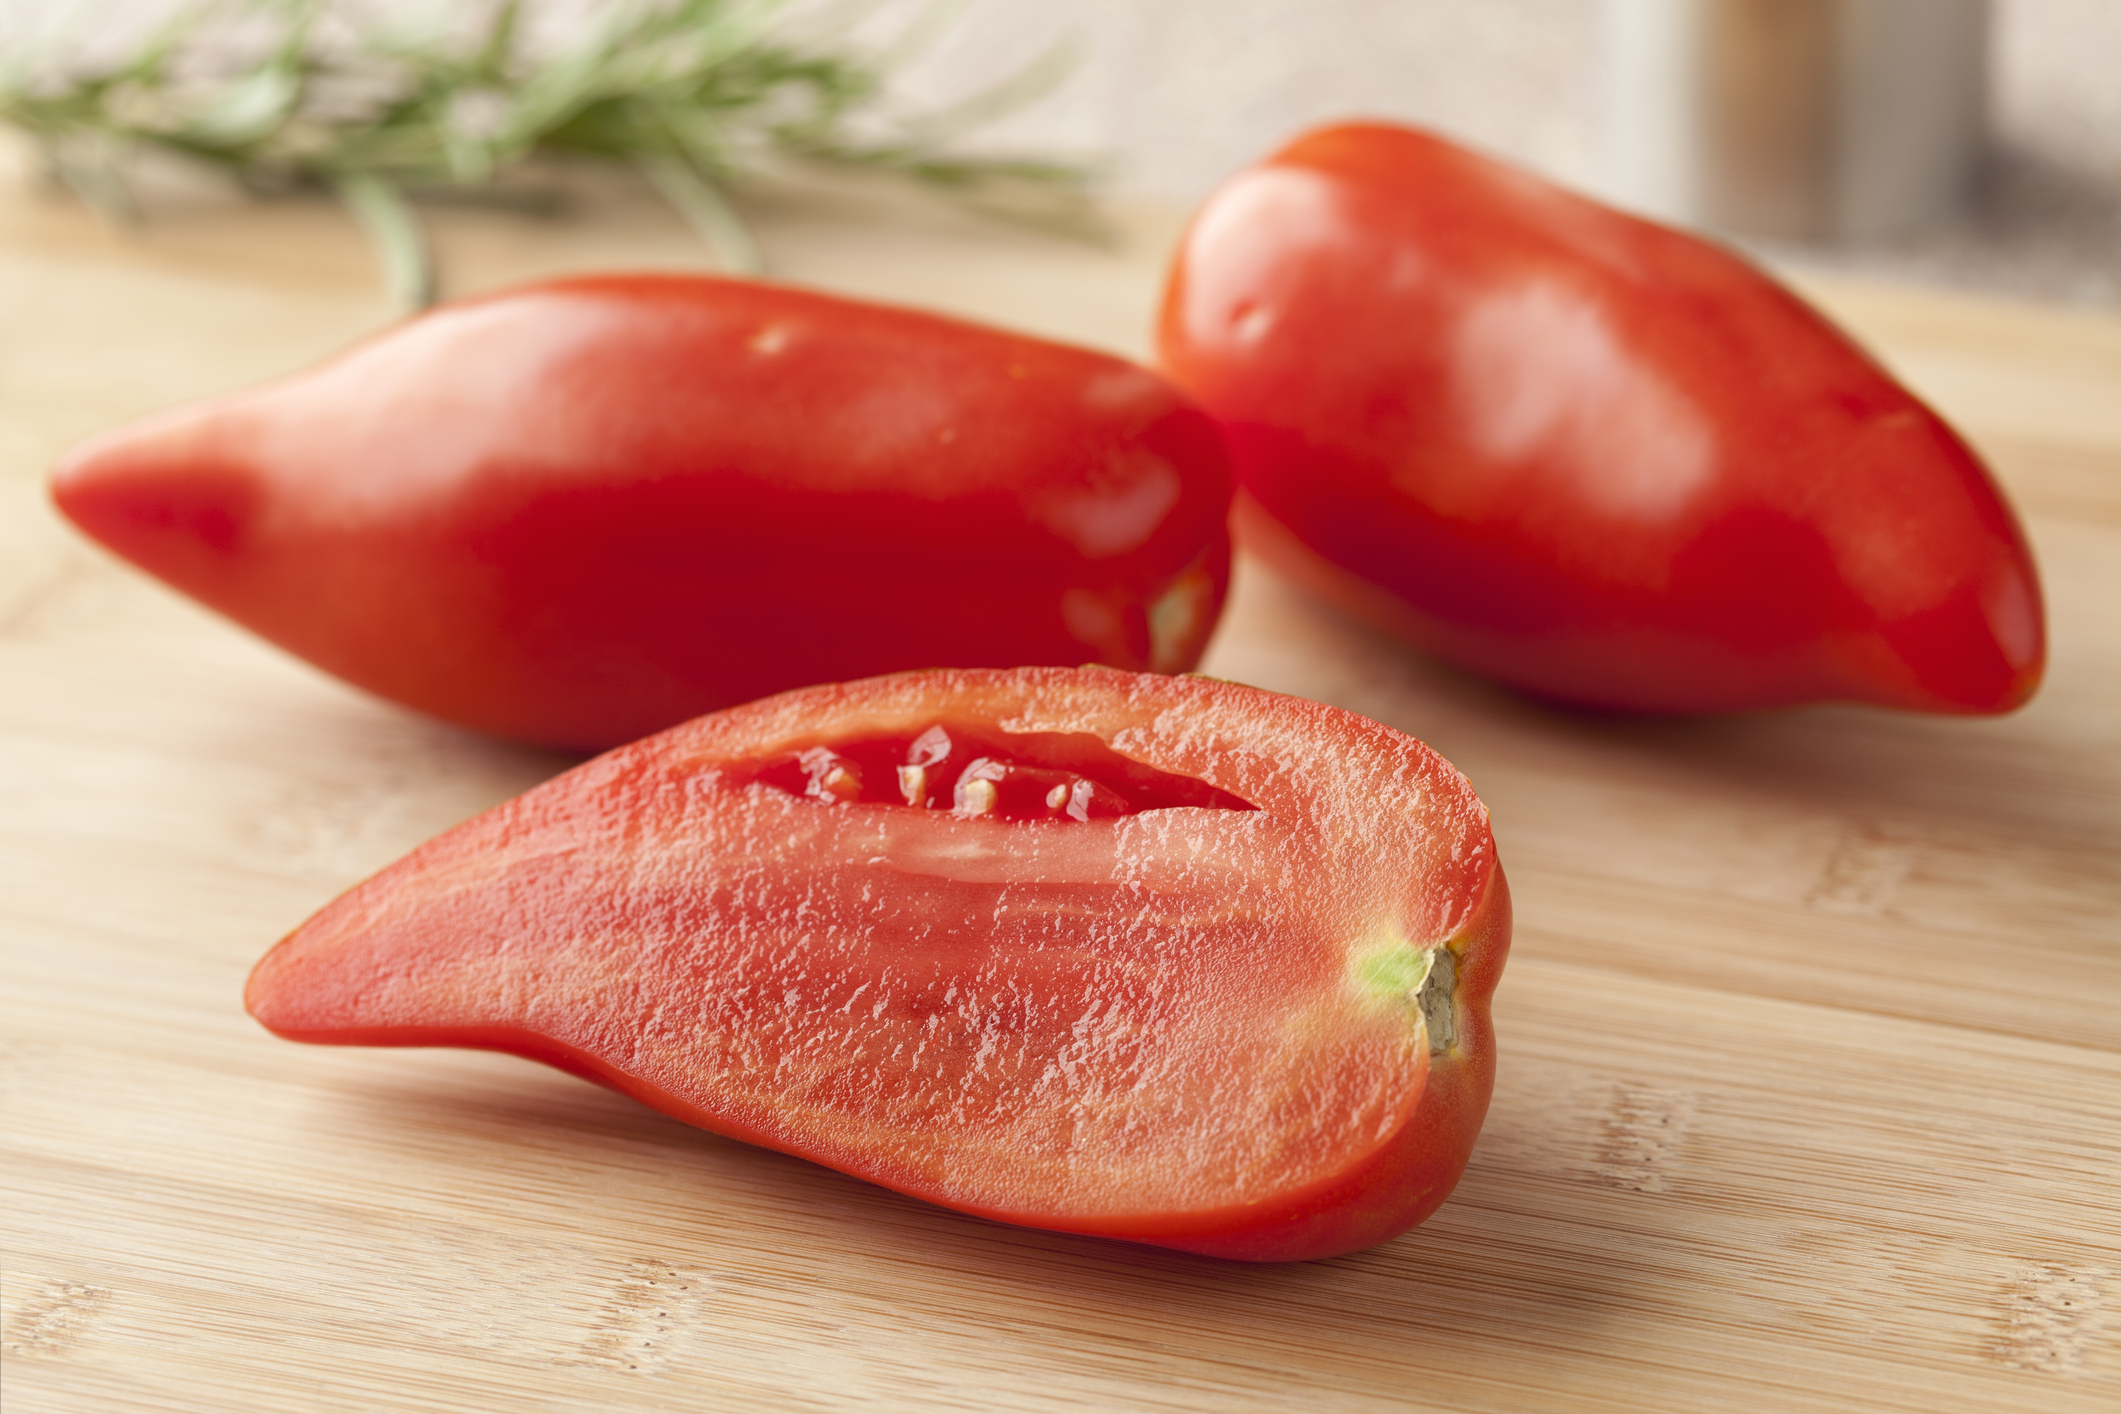 Gagnants 1er test : tomate Cornue des Andes